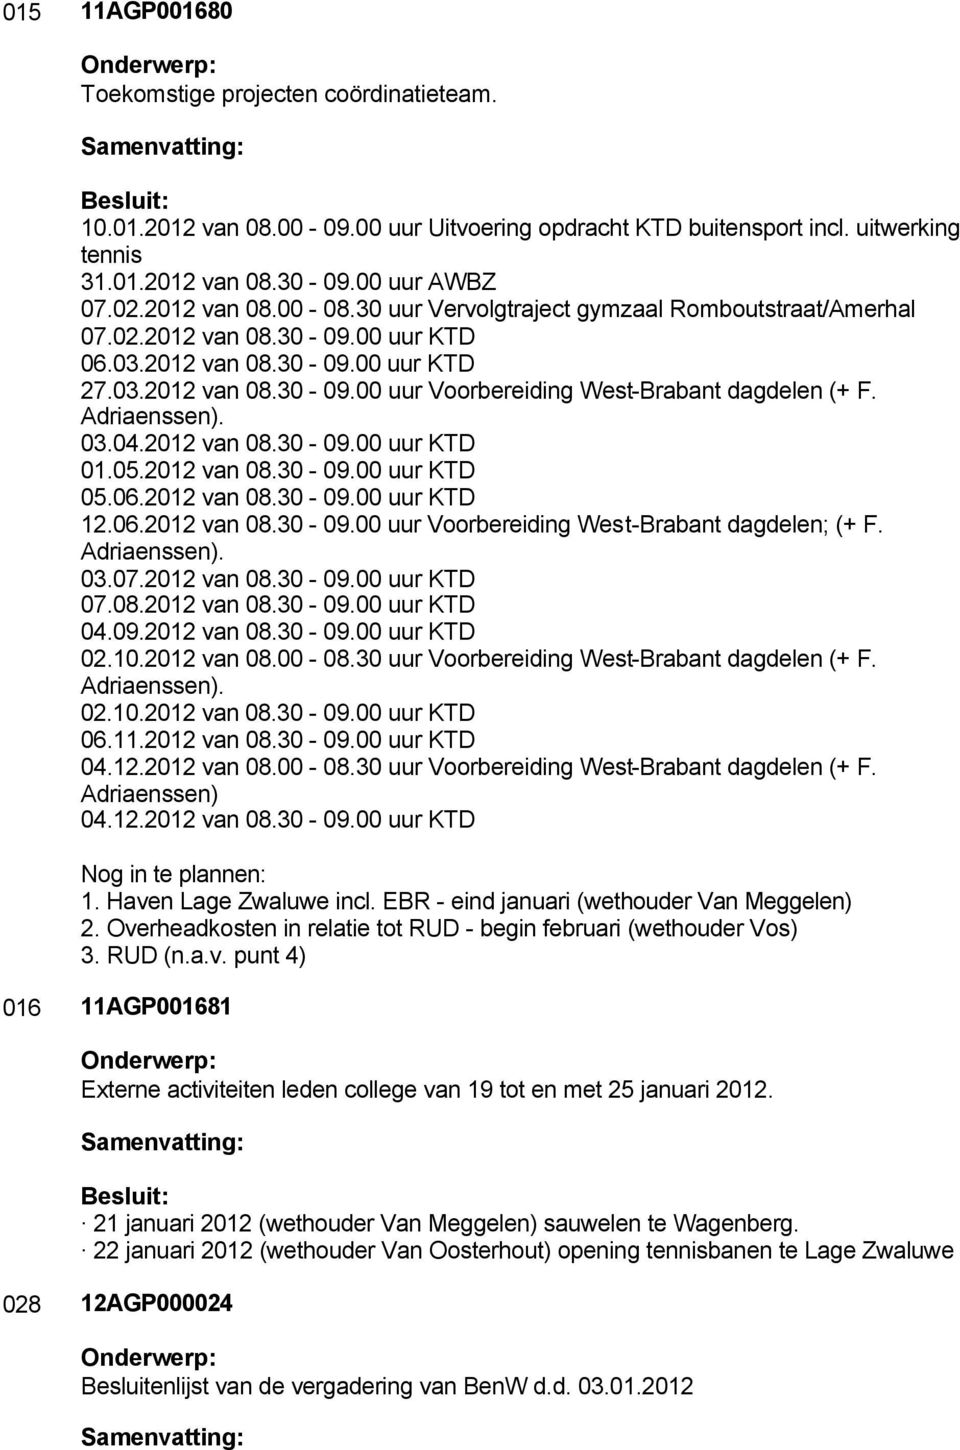 Adriaenssen). 03.04.2012 van 08.30-09.00 uur KTD 01.05.2012 van 08.30-09.00 uur KTD 05.06.2012 van 08.30-09.00 uur KTD 12.06.2012 van 08.30-09.00 uur Voorbereiding West-Brabant dagdelen; (+ F.